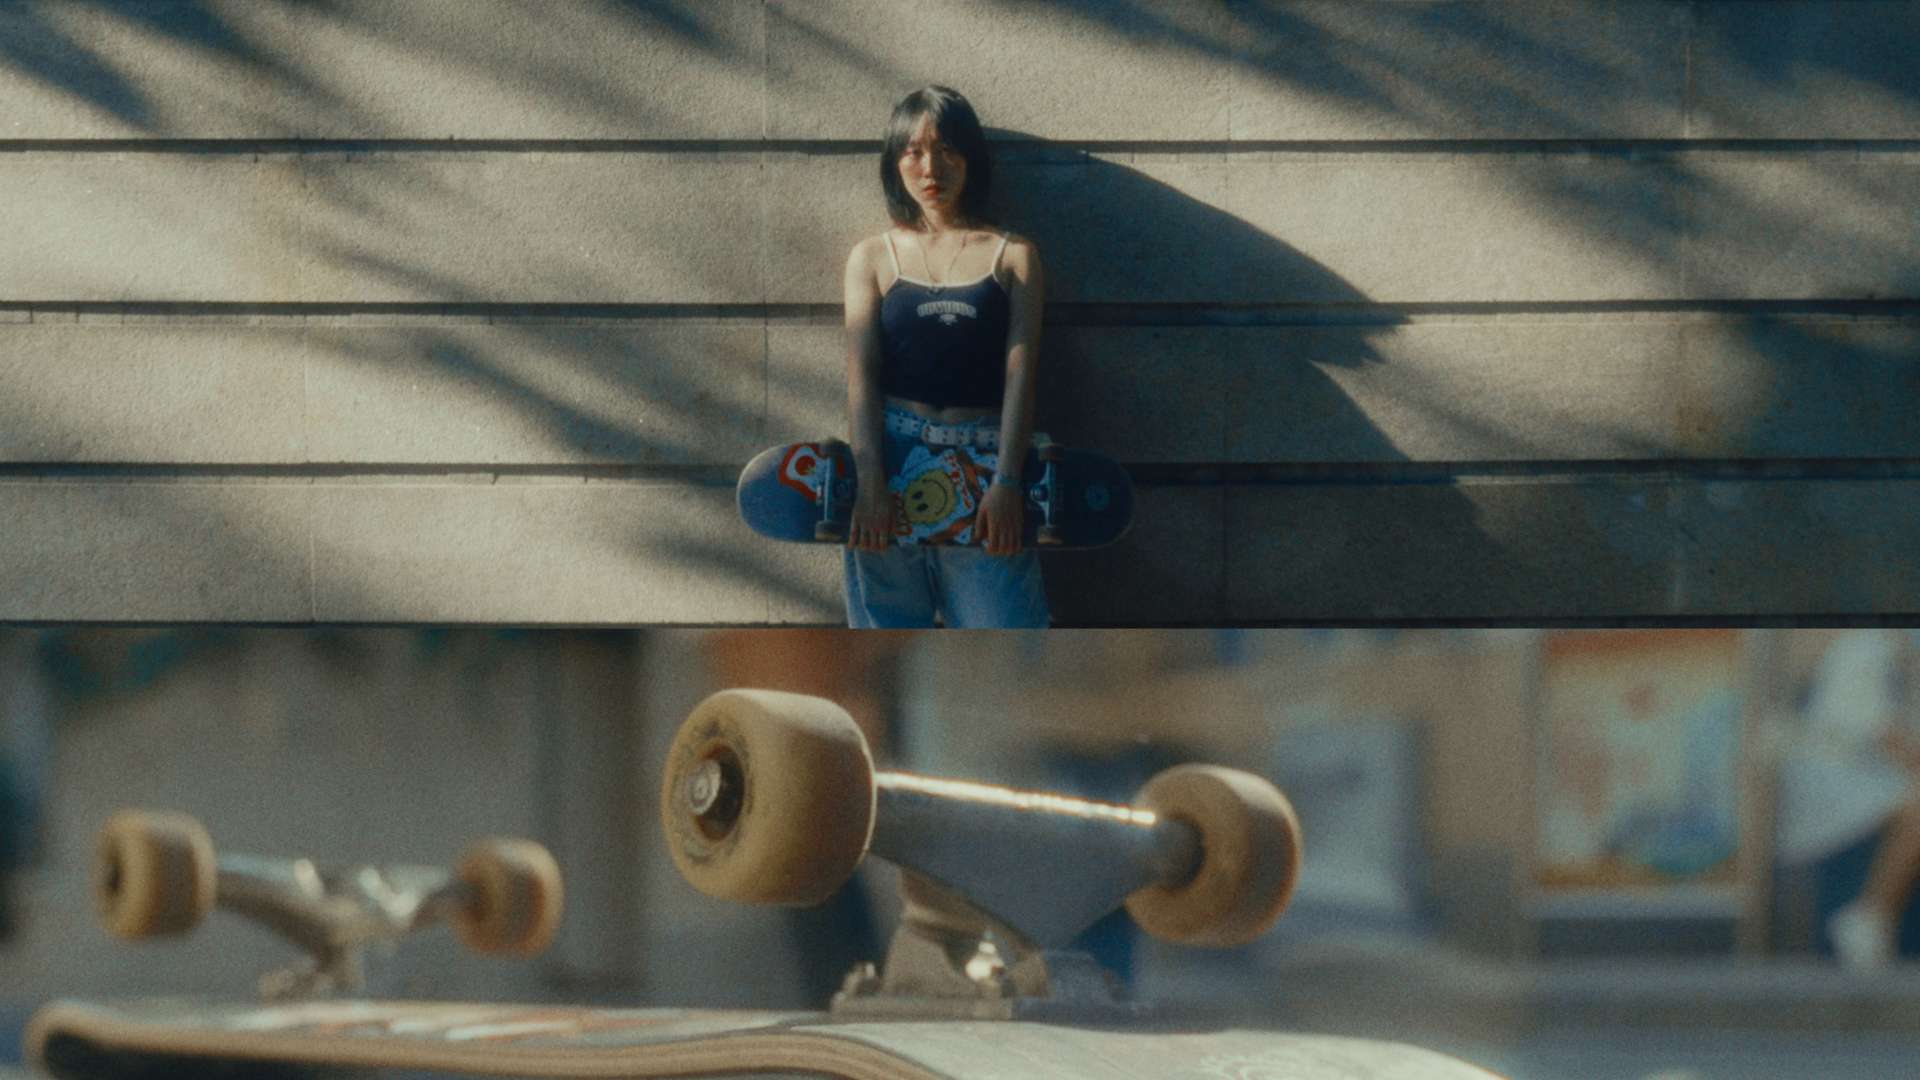 Skate-5ft 滑板创意时尚短片